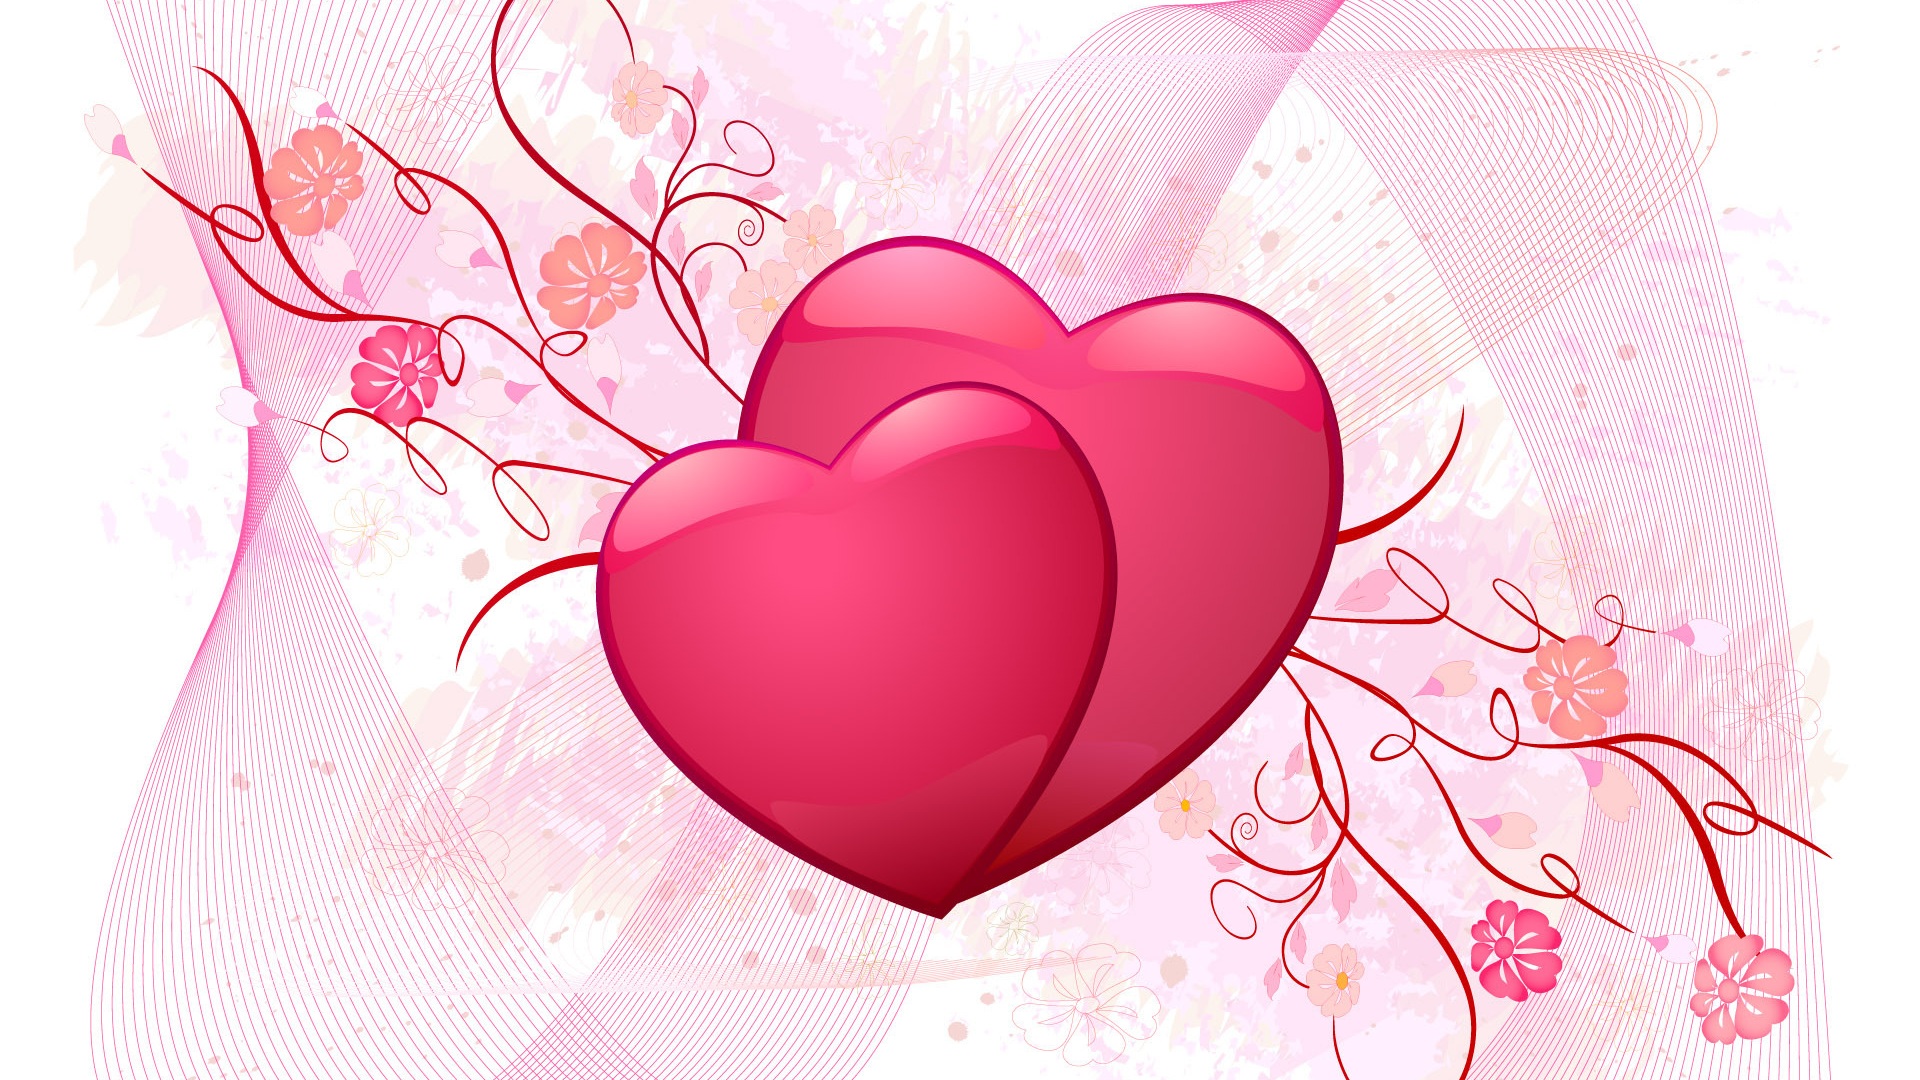 バレンタインデーの壁紙,心臓,愛,ピンク,バレンタイン・デー,心臓